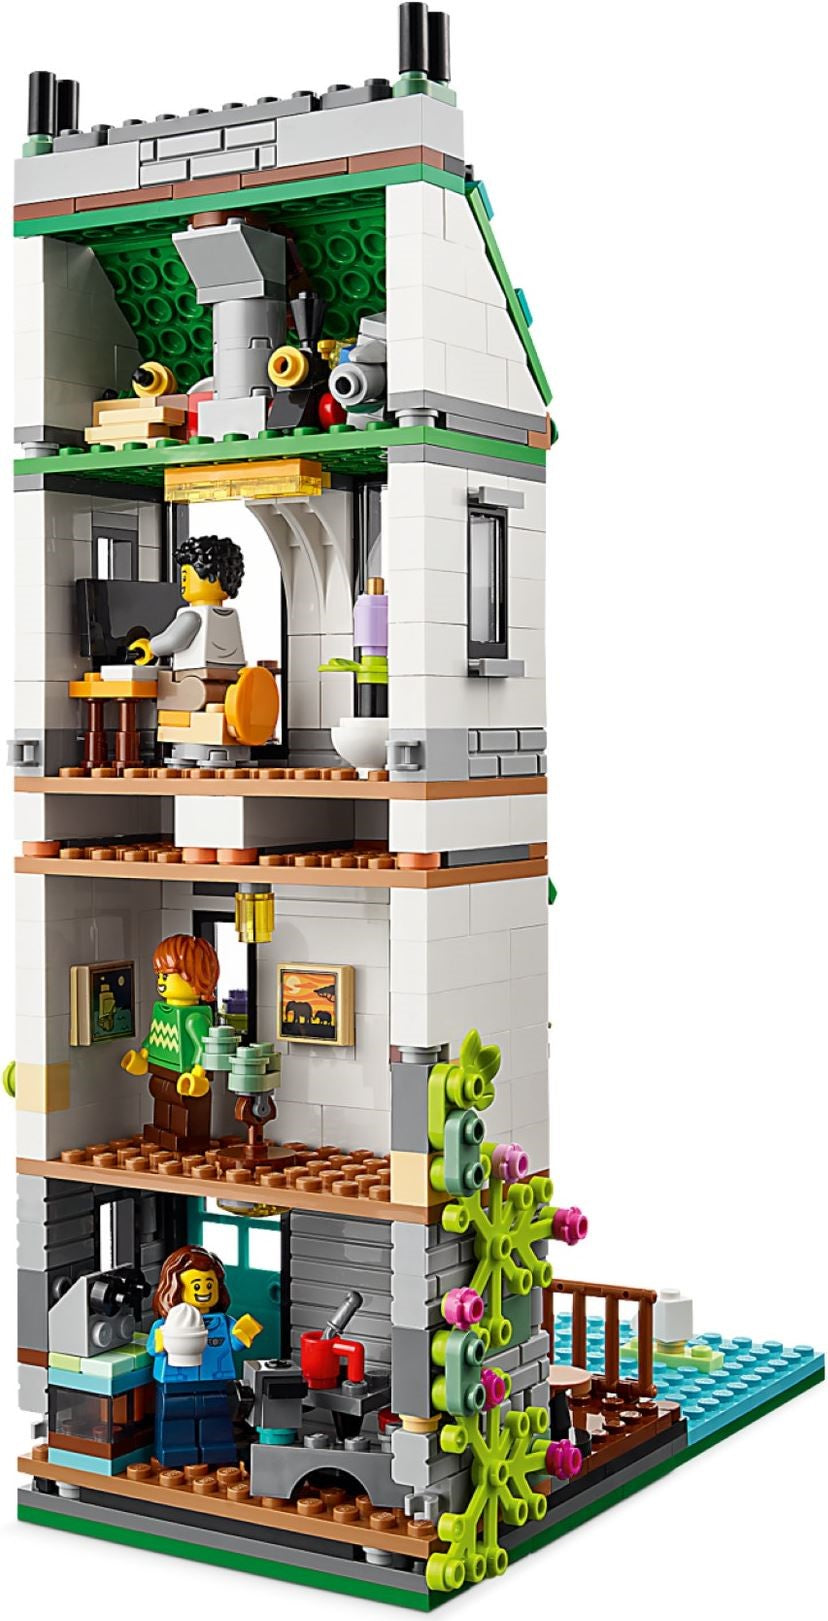 Lego Creator Casa Accogliente